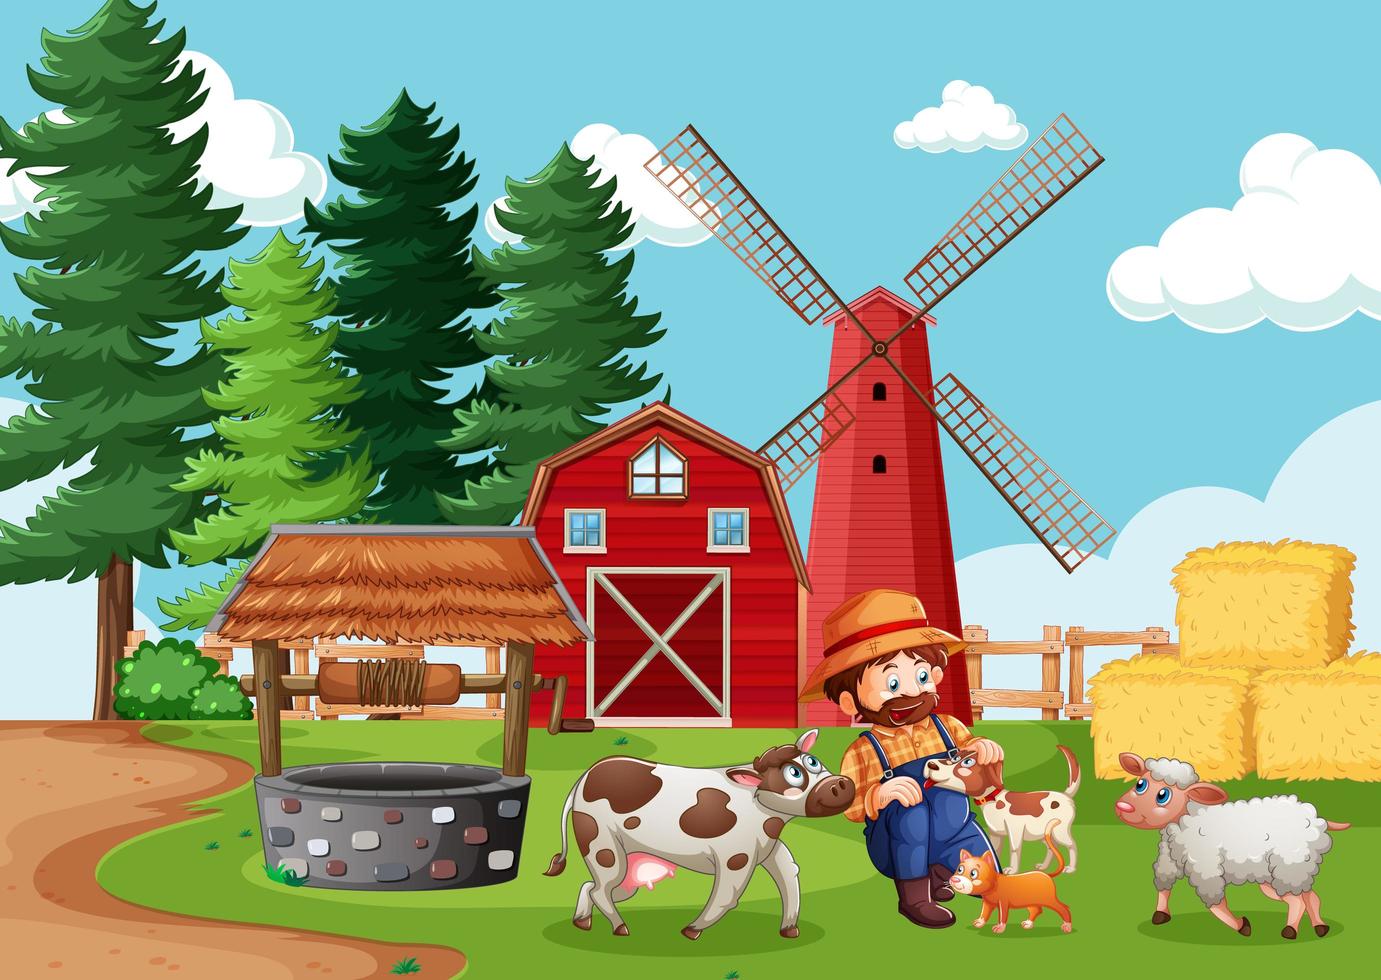 contadino con fattoria degli animali nella scena della fattoria in stile cartone animato vettore